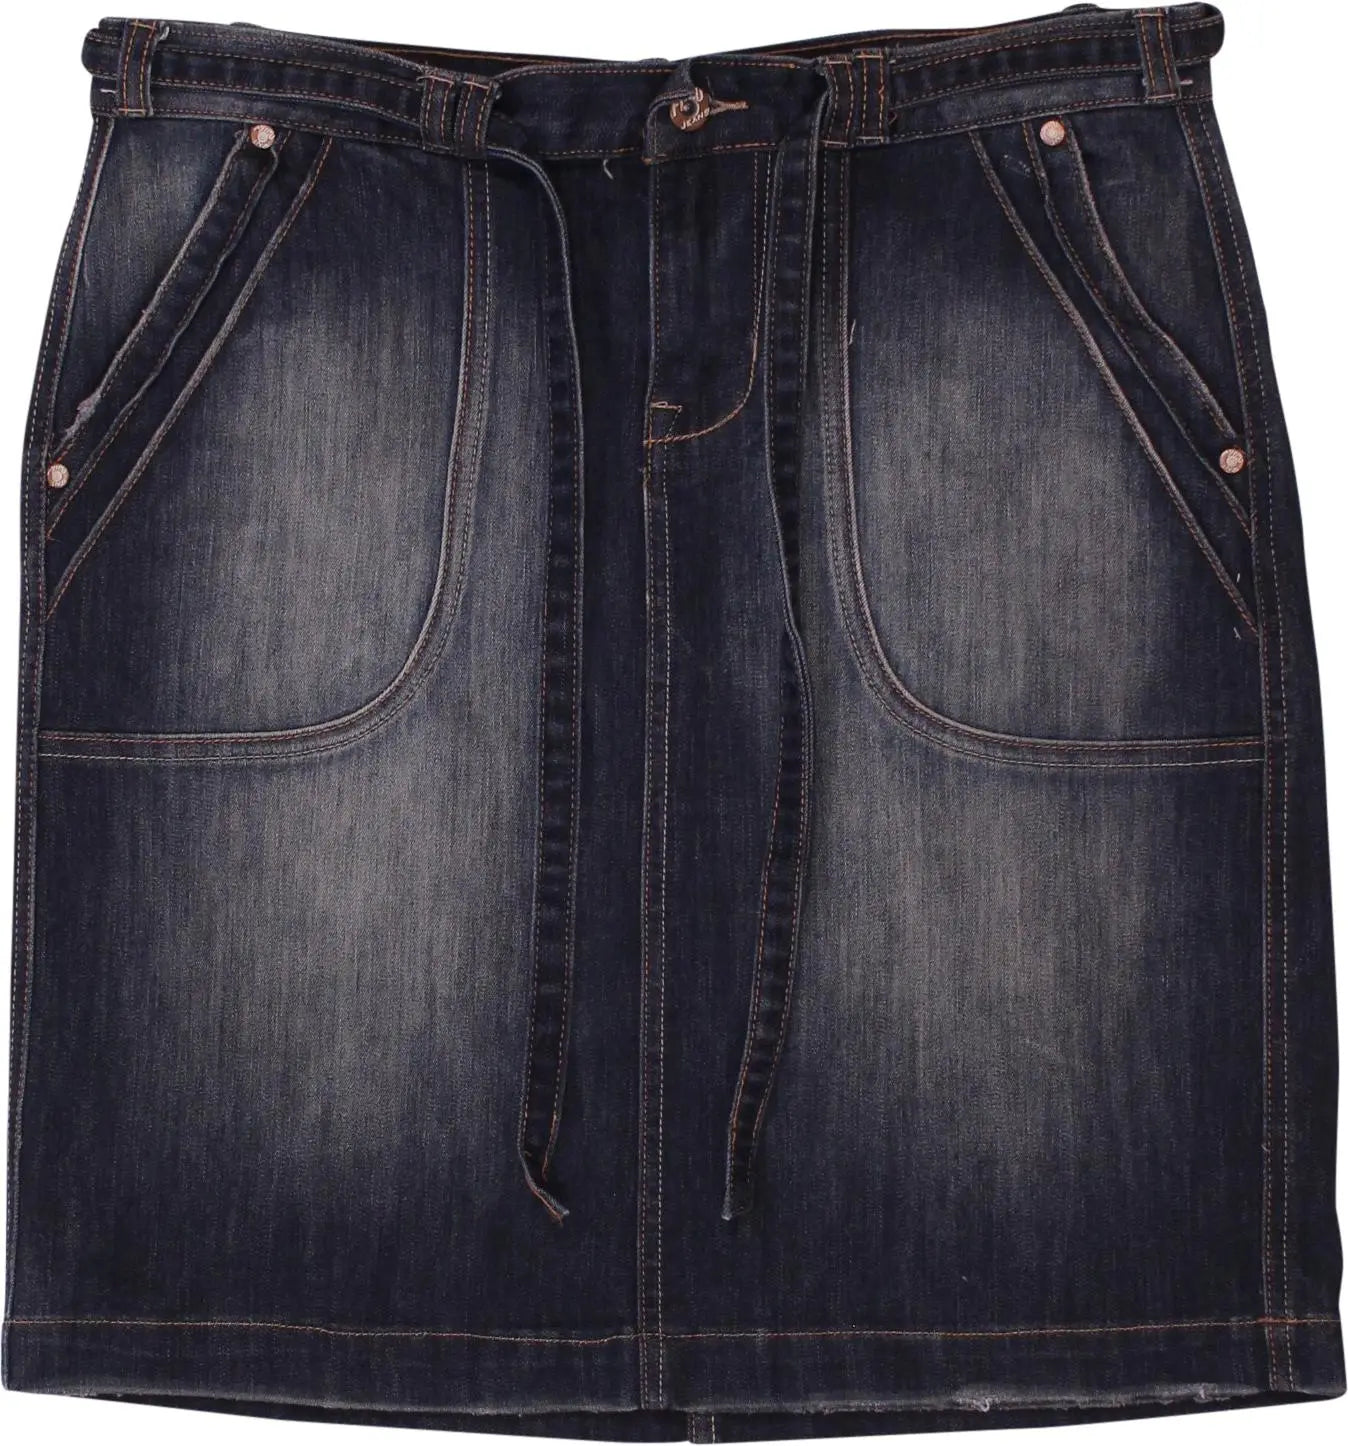 Fugu Jeans - Denim Skirt- ThriftTale.com - Vintage and second handclothing